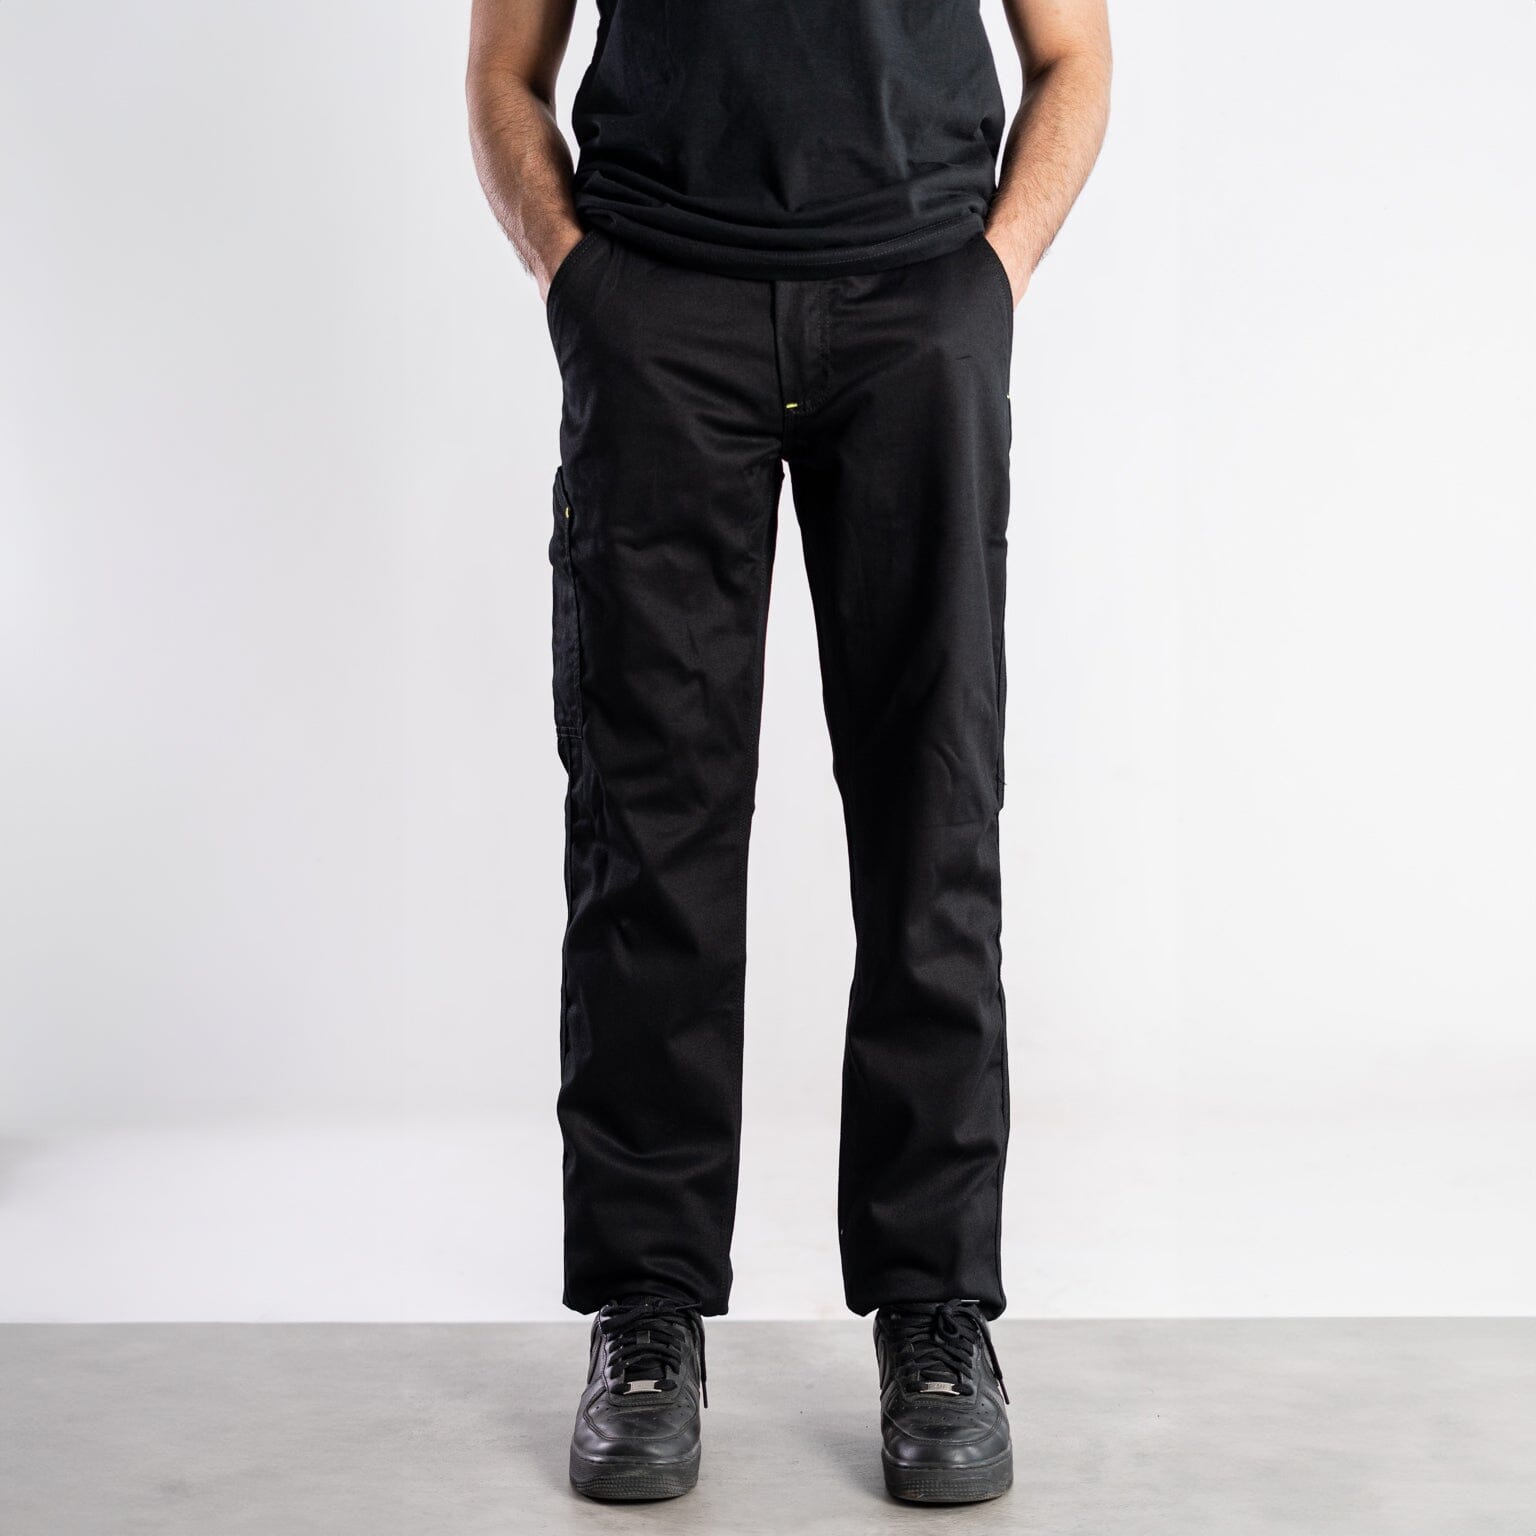 Payper Men's Hasselt Cargo Pants Men's Cargo Pants HAS Apparel Black 26 30